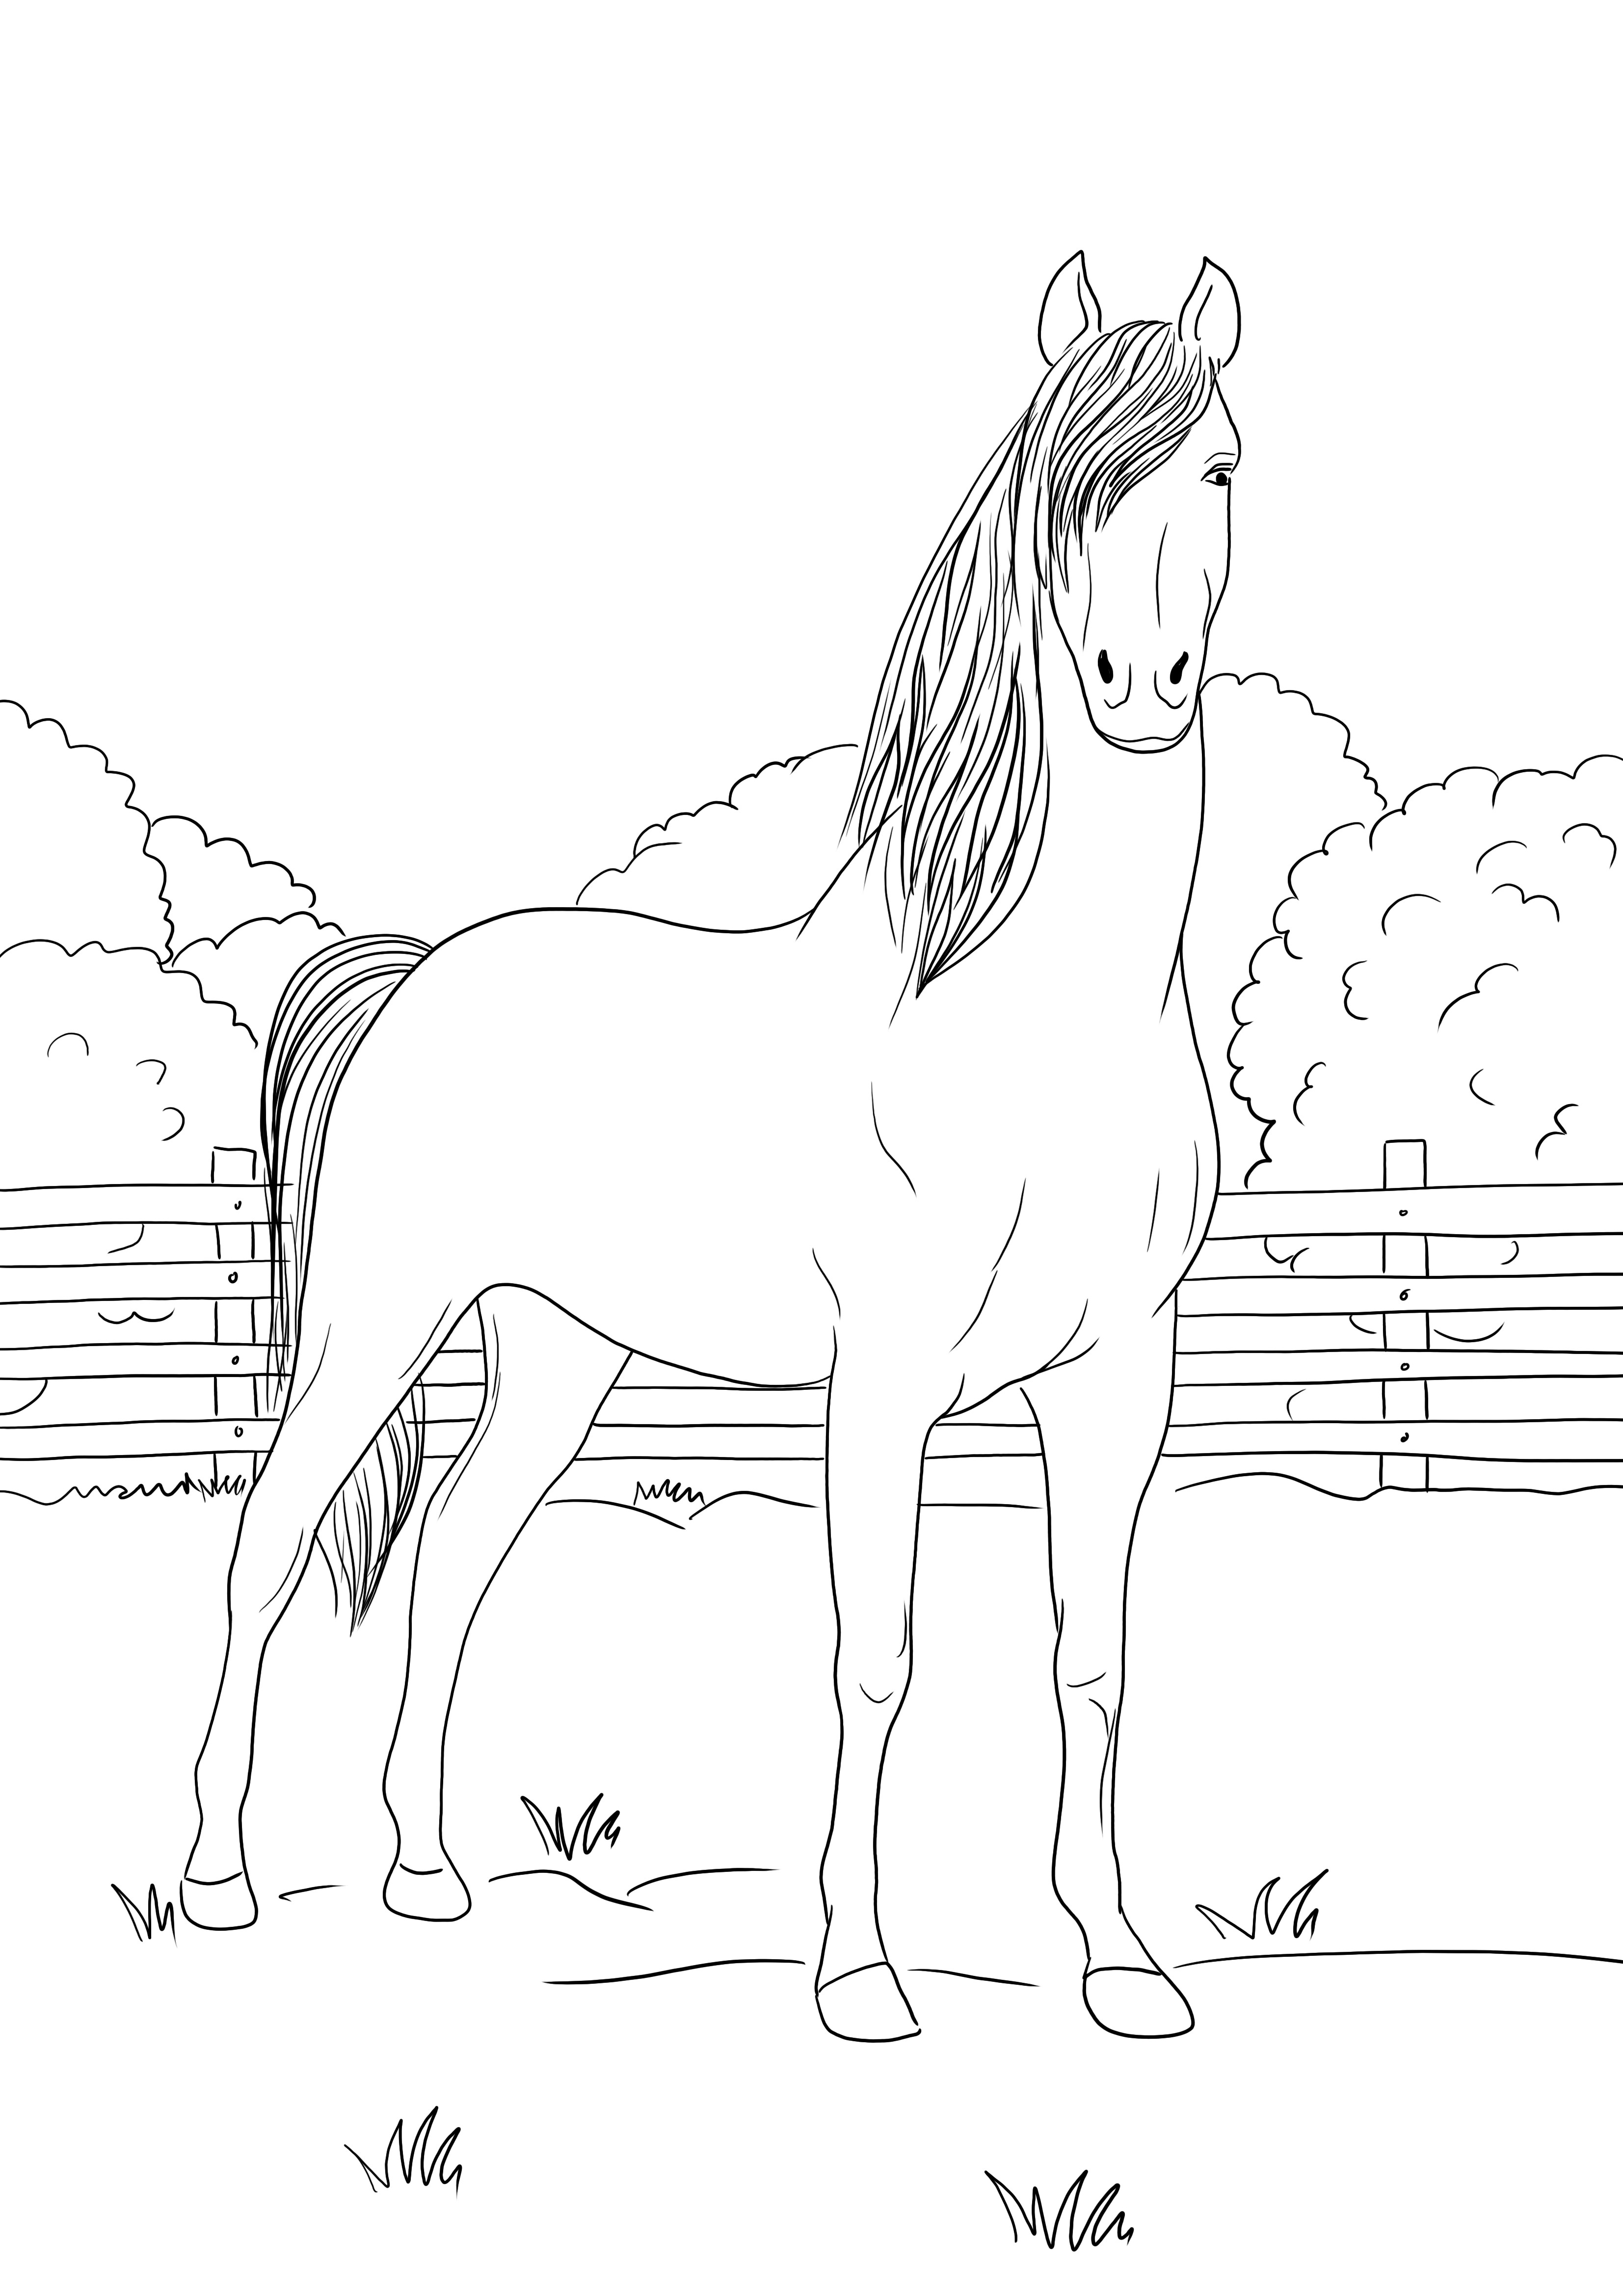 Çocuklar için indirmek için ücretsiz duran bir Morgan Horse boyama sayfası